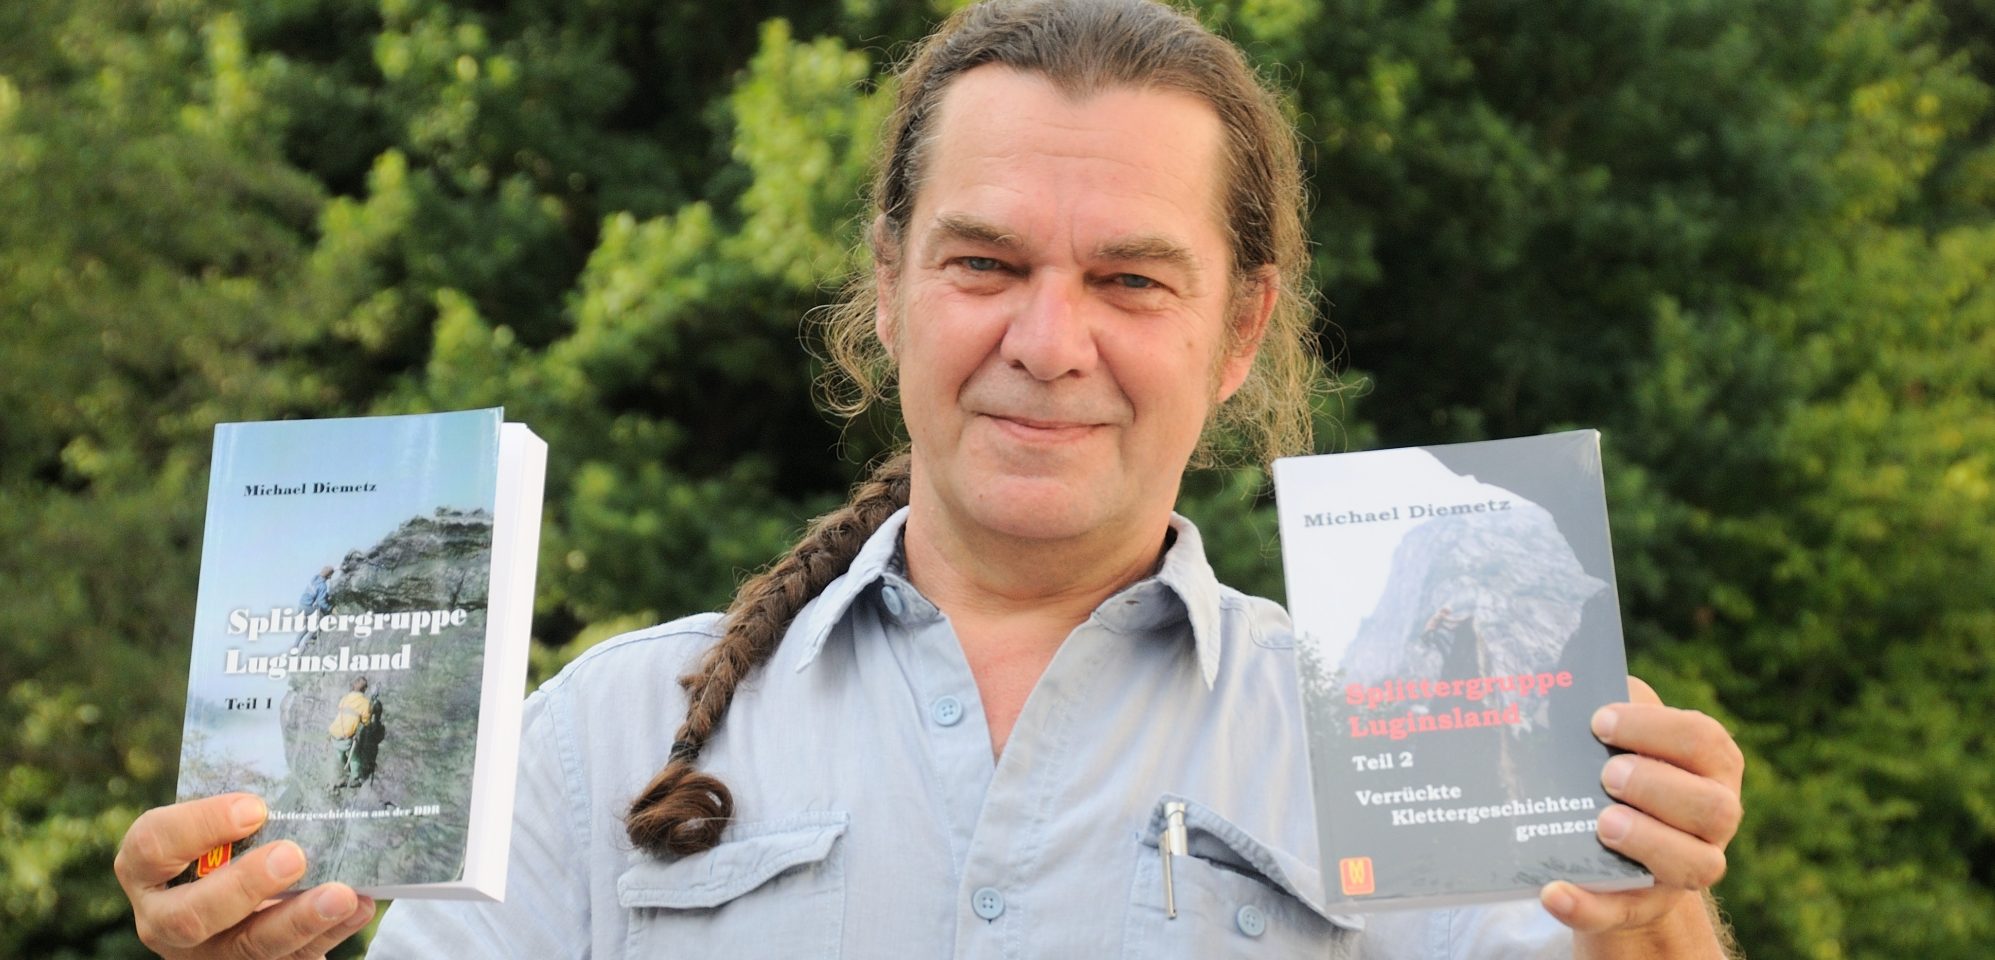 Humoristische Lesung mit Michael Diemetz aus  „Splittergruppe Luginsland“  – Verrückte Klettergeschichten grenzenlos